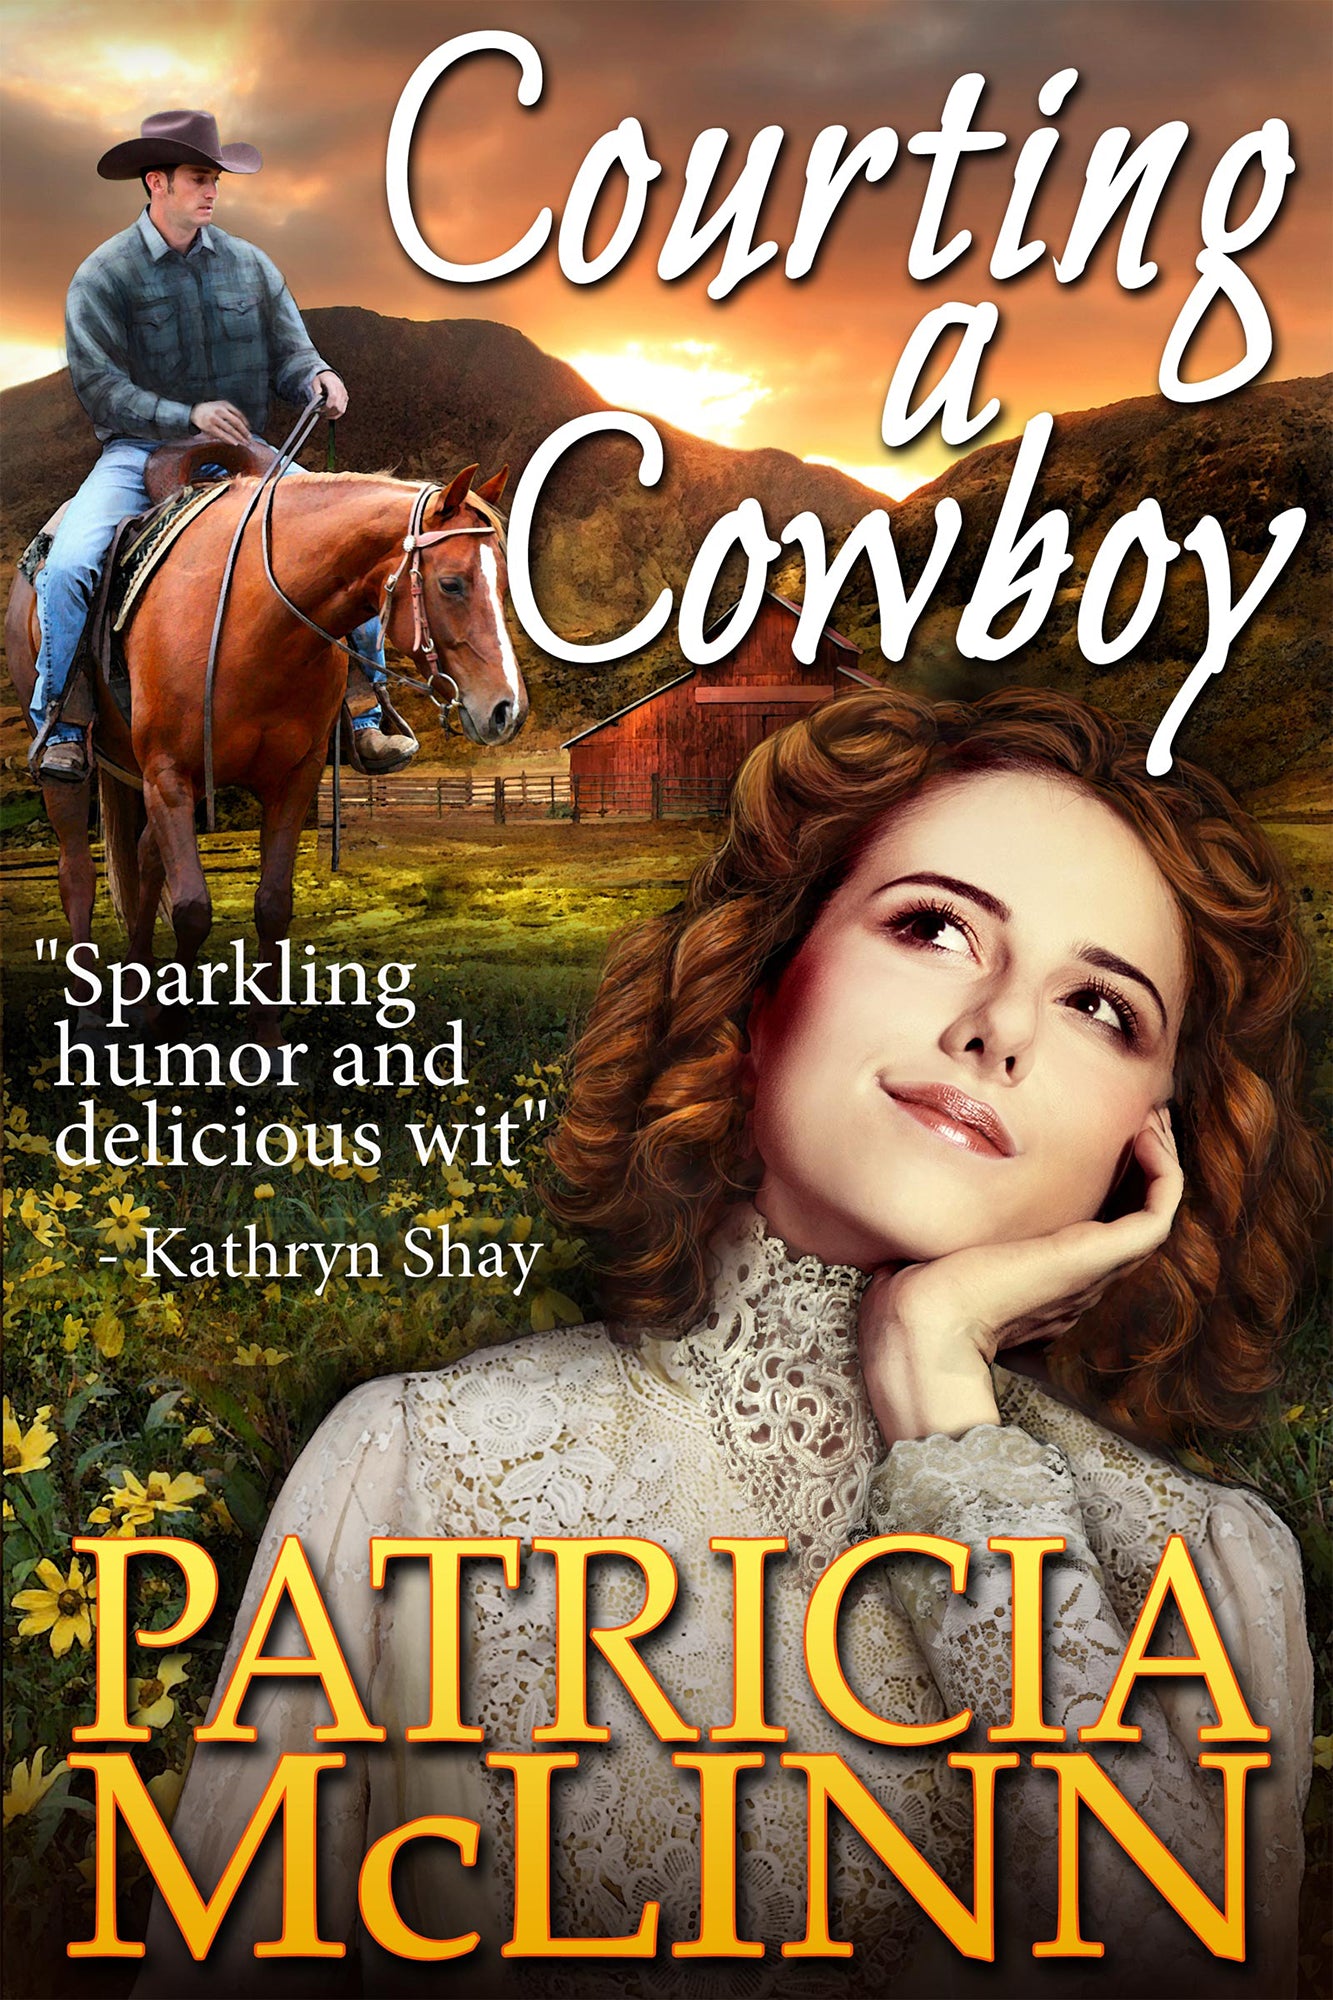 Courting a Cowboy - Patricia McLinn